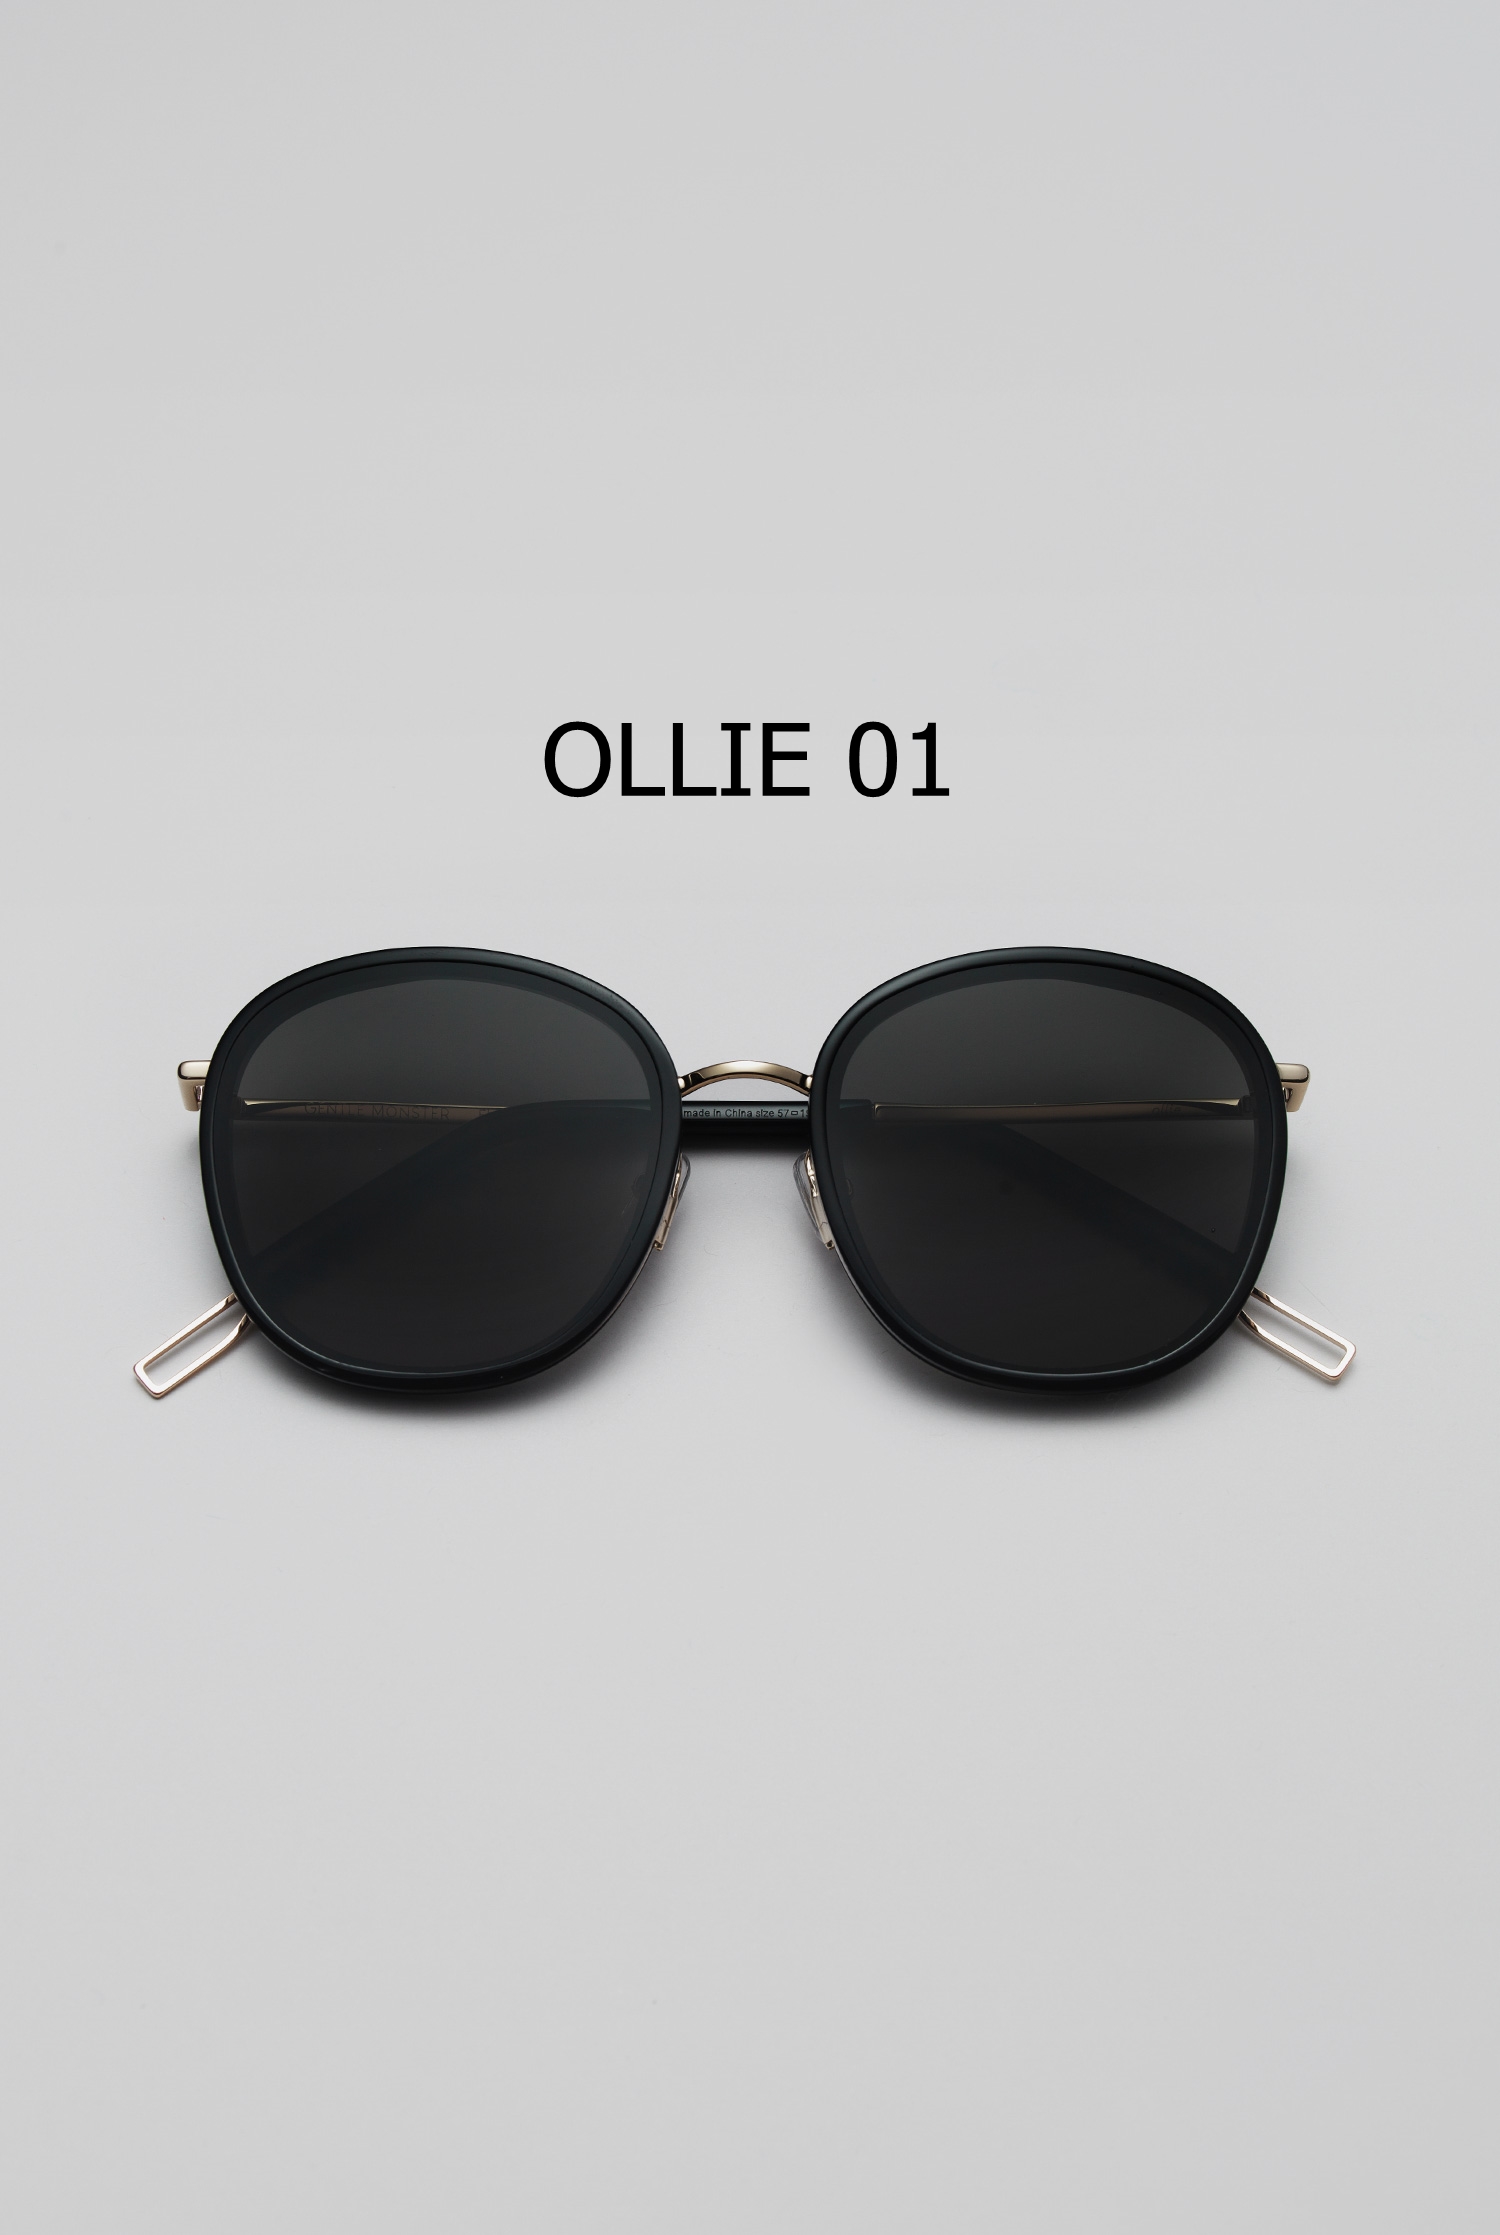 OLLIE 01